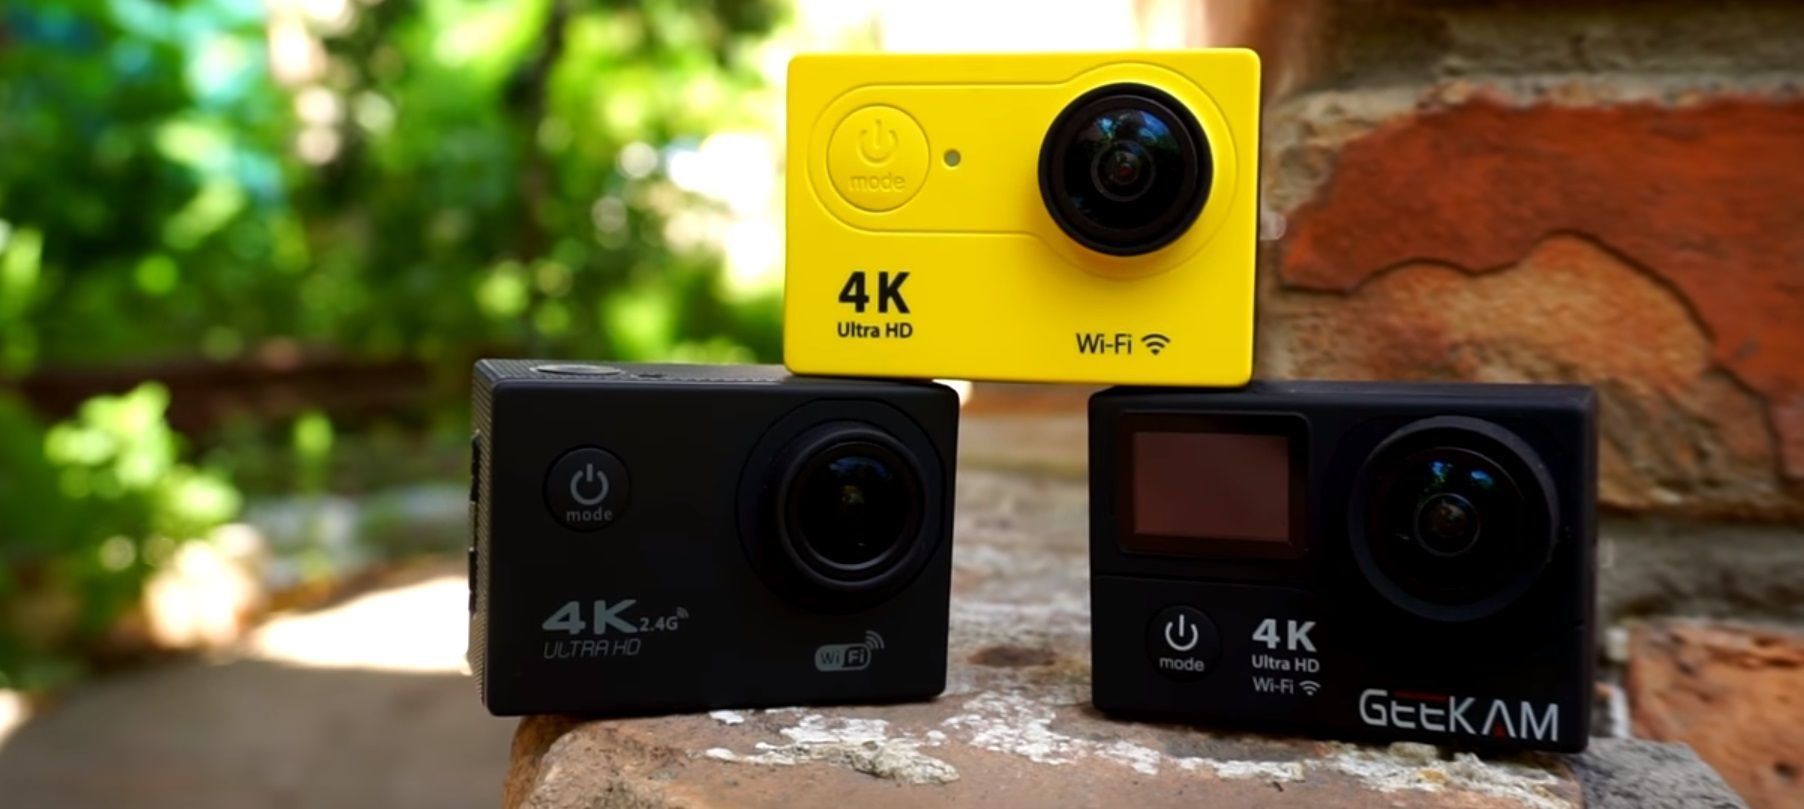 Examen des meilleures caméras d'action EKEN pour 2020